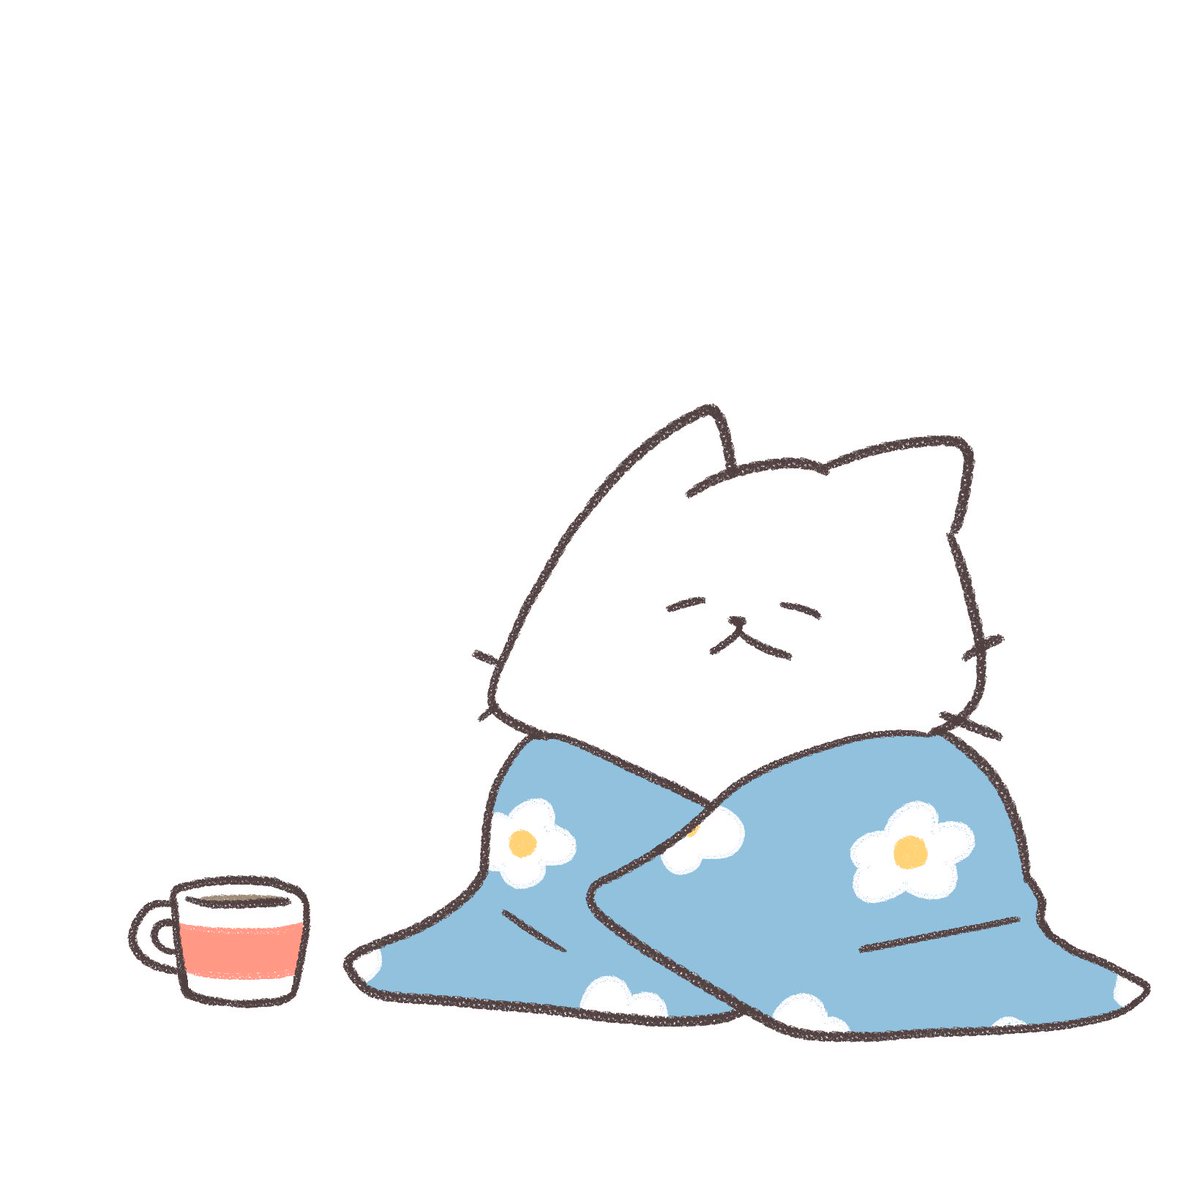 「おはようございます 今朝は冷えましたね〜」|猫原のしのイラスト